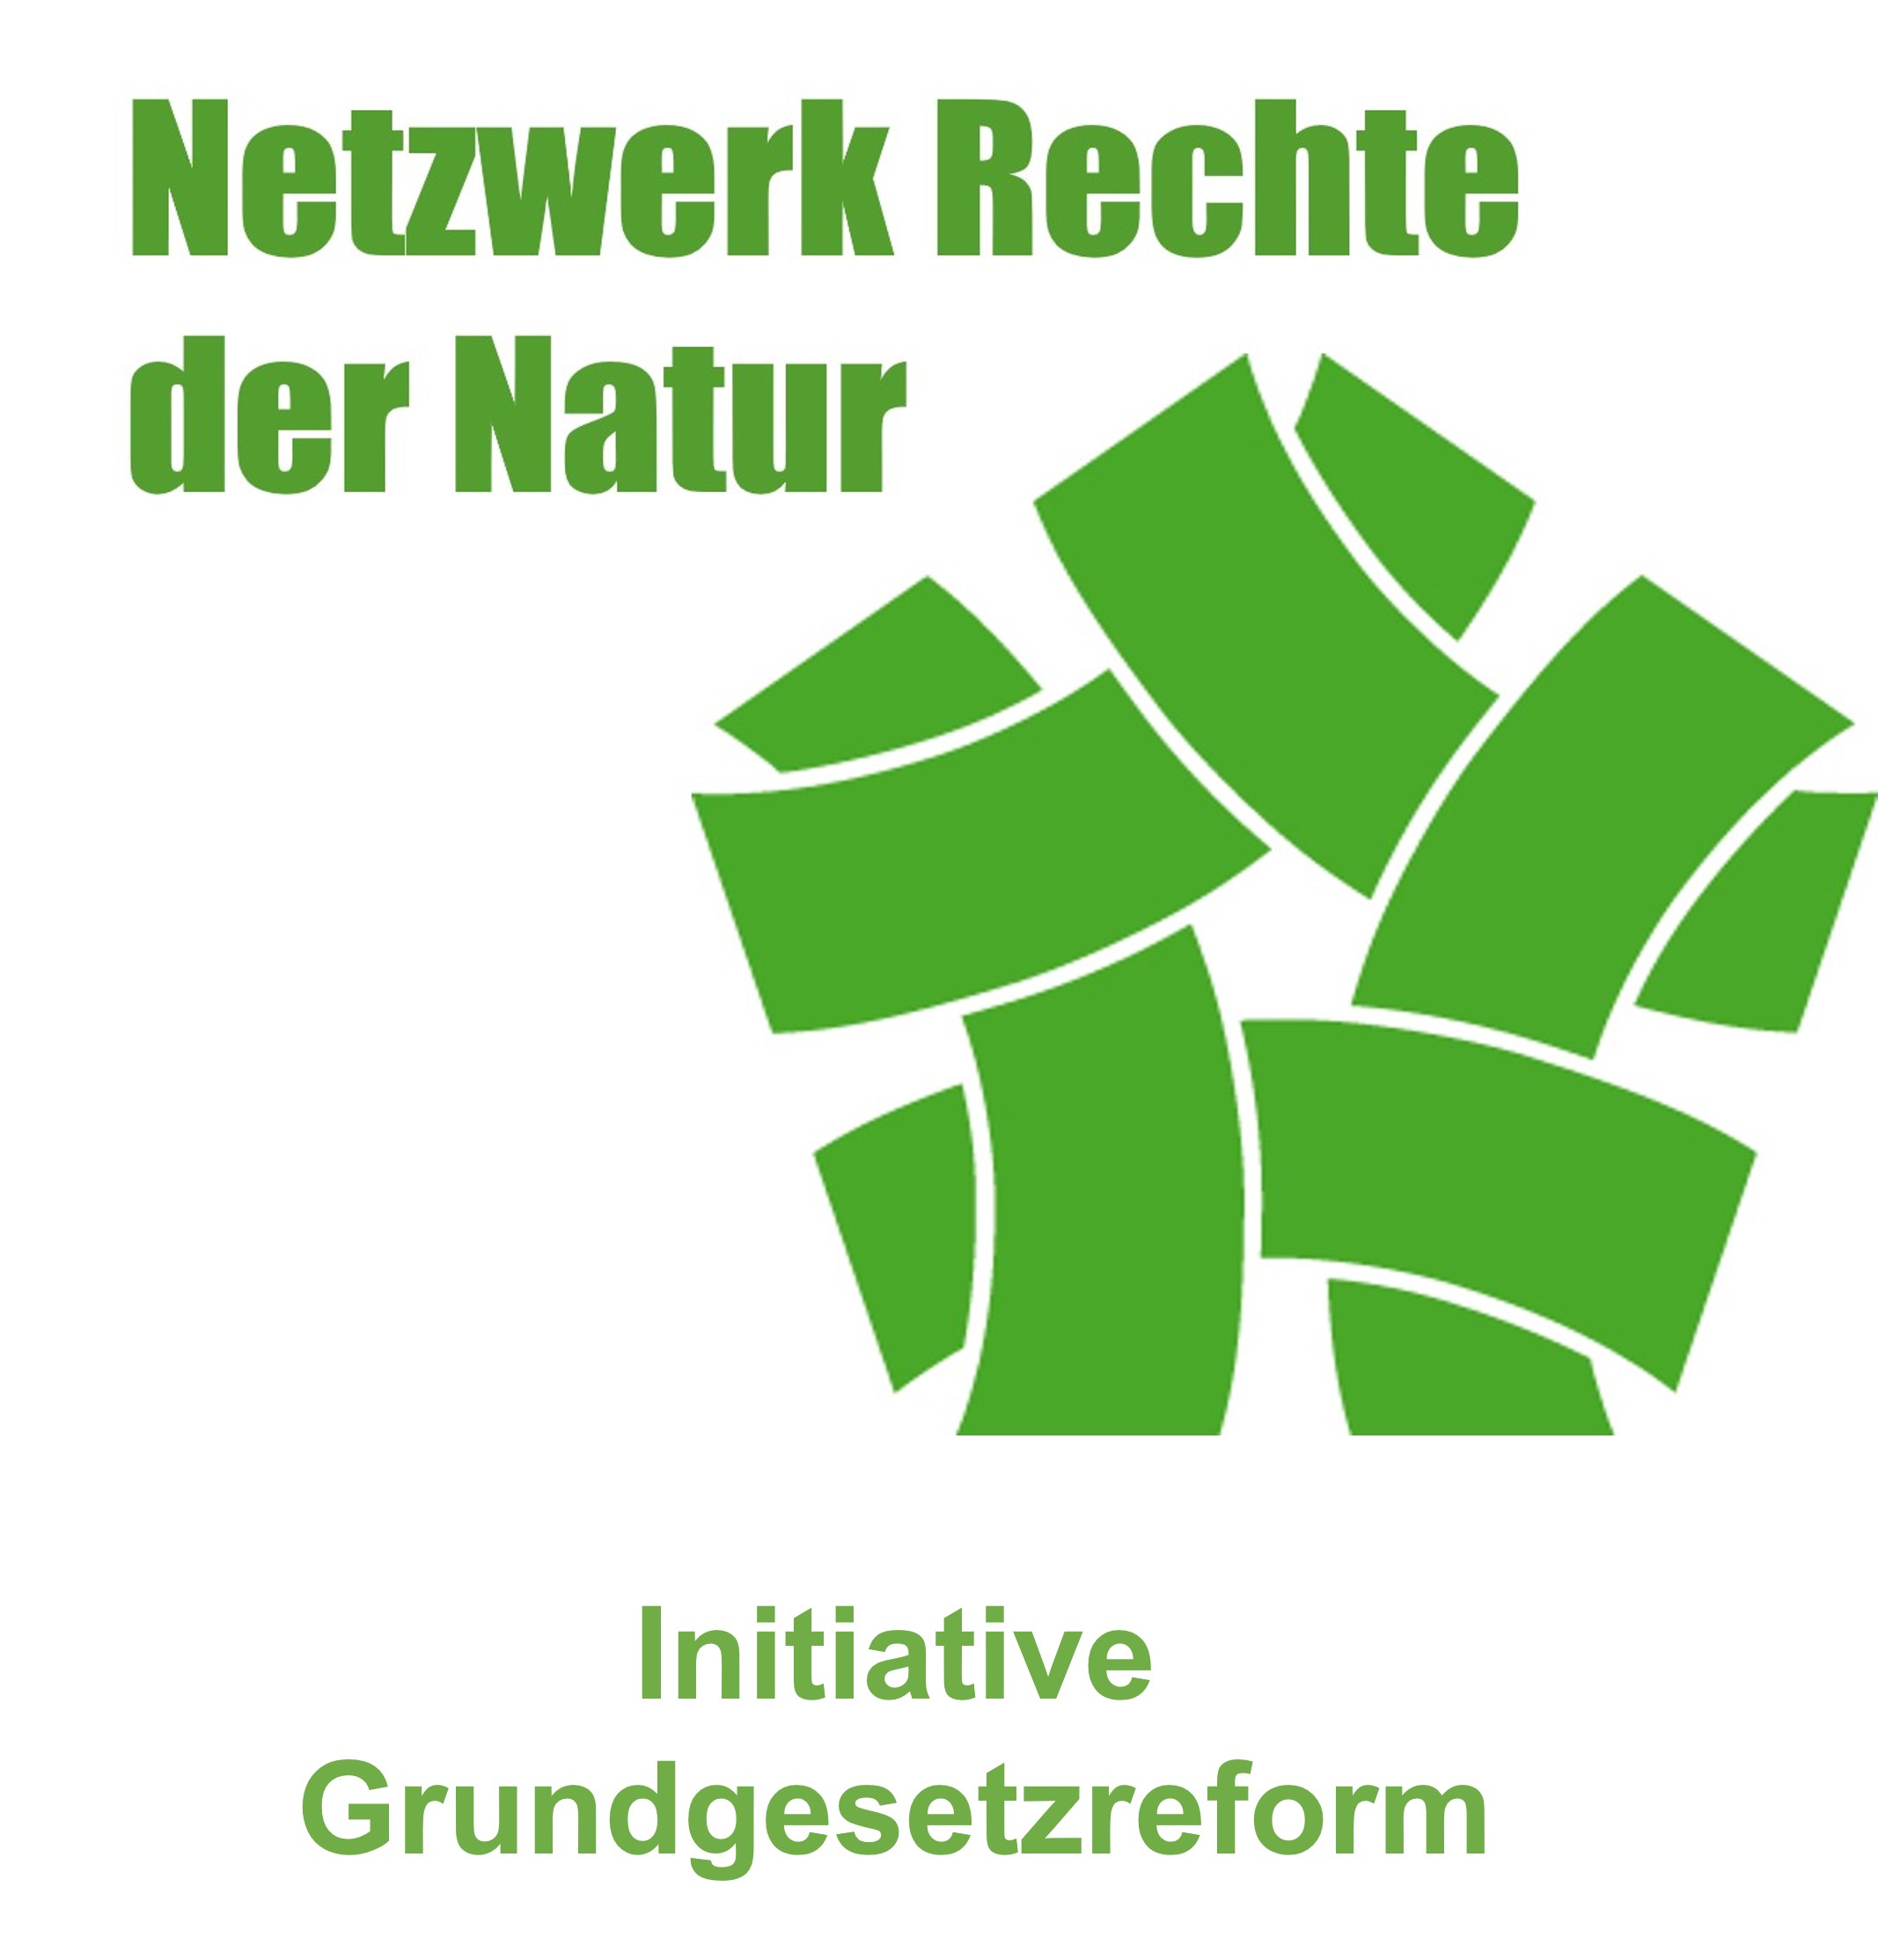 Netzwerk Rechte der Natur Grundgesetzreform